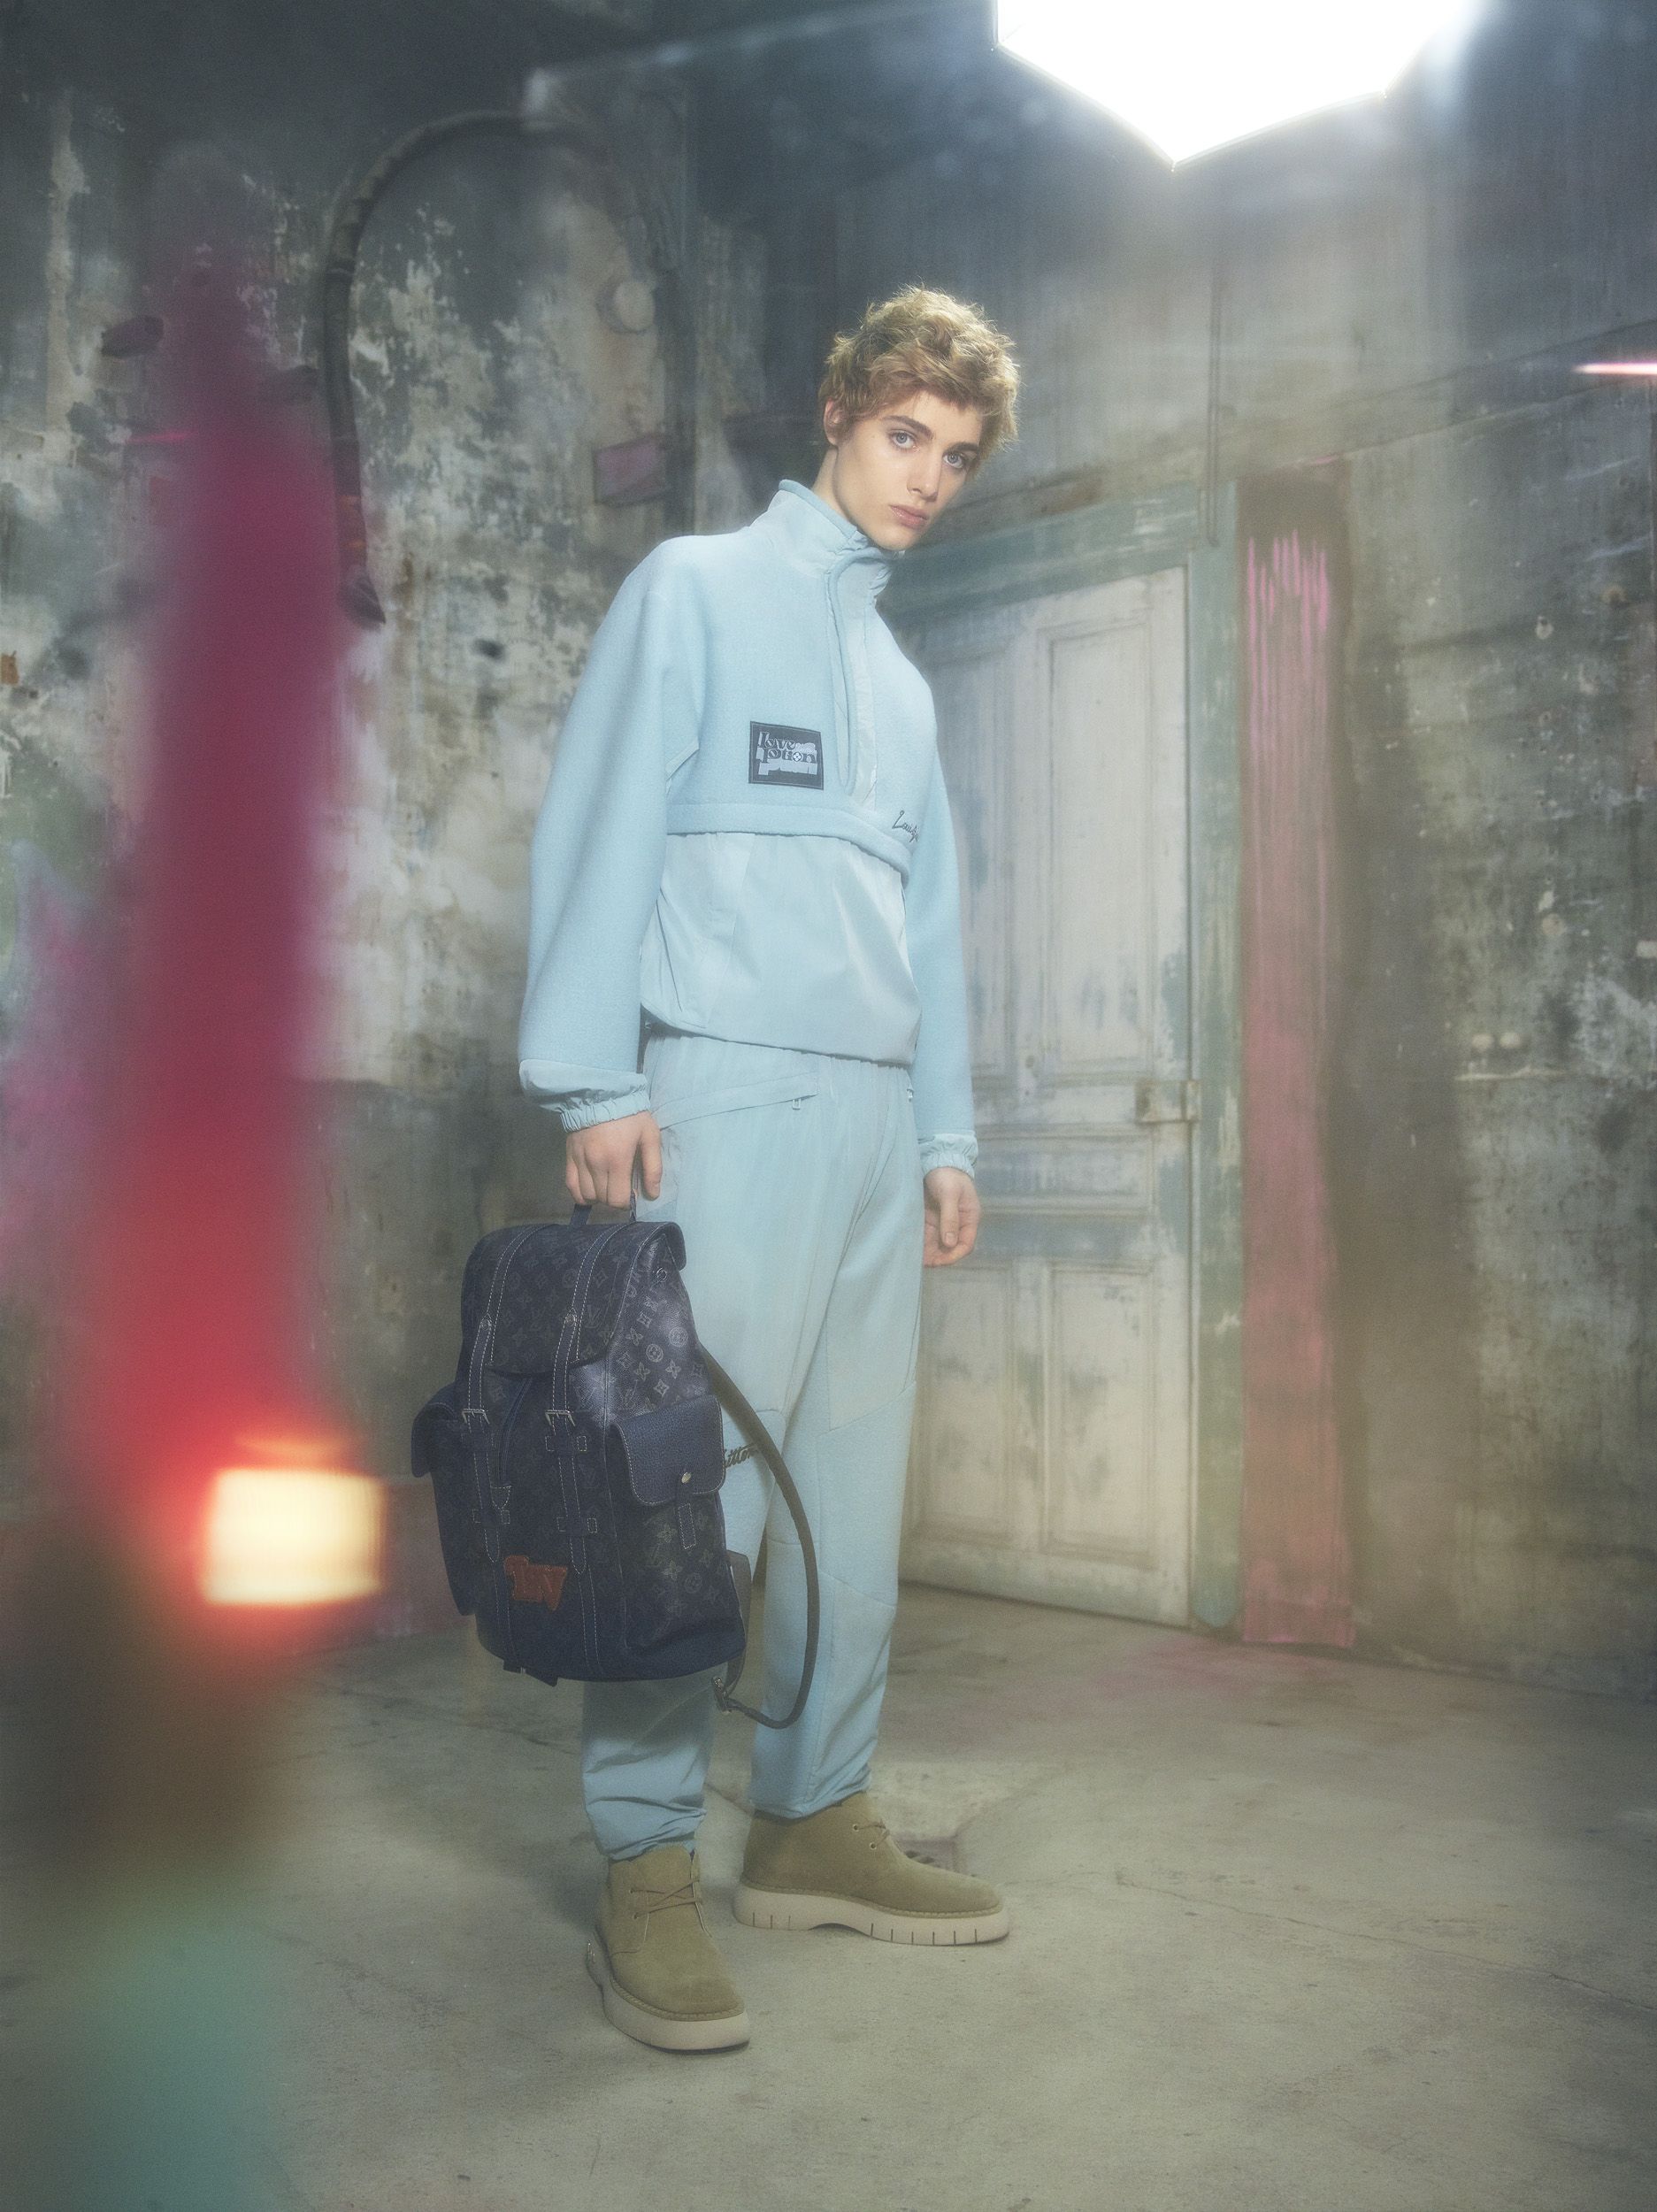 Louis Vuitton verano 2013: Una colección para hombres aventureros -  Primeriti: Blog